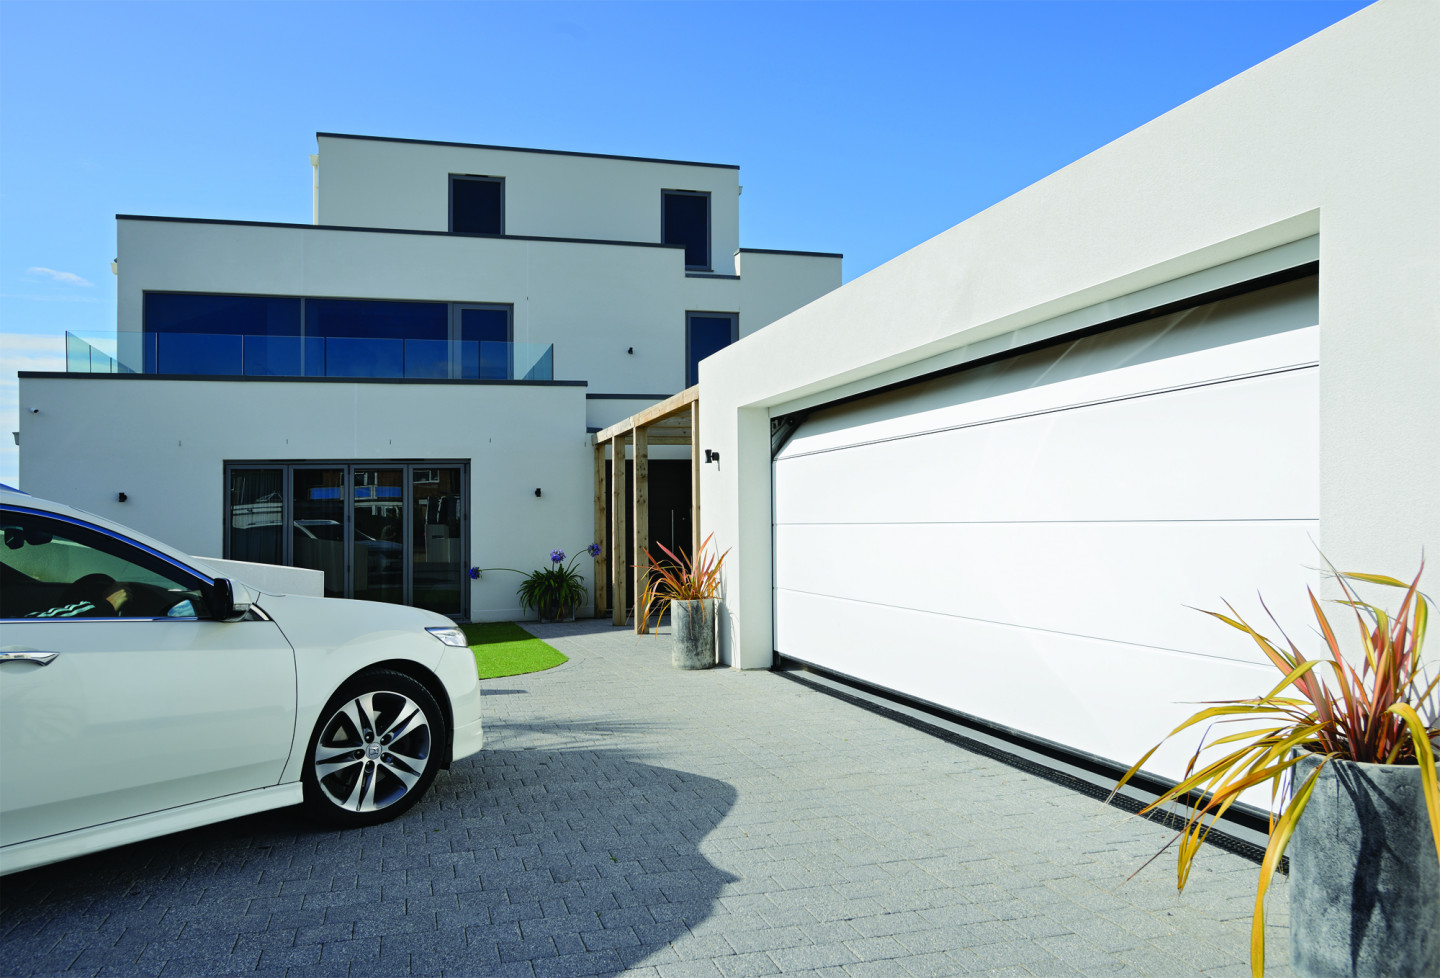 Top tips for choosing a new garage door